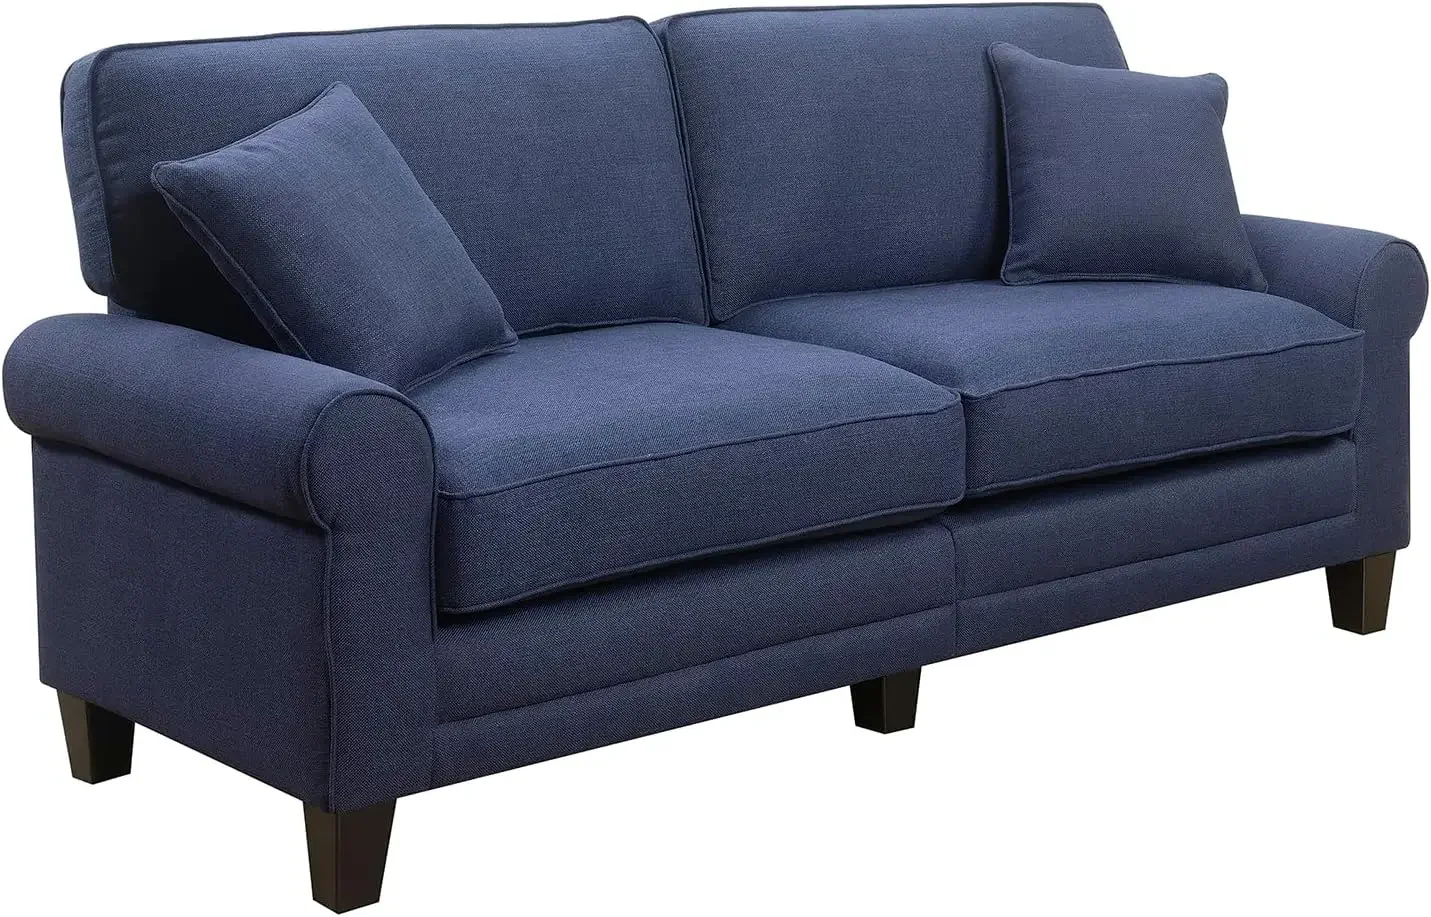 

Диван на 73 дивана для двоих, подушки с наволочками и закругленные дужки, прочная современная мягкая ткань, темно-синий цвет